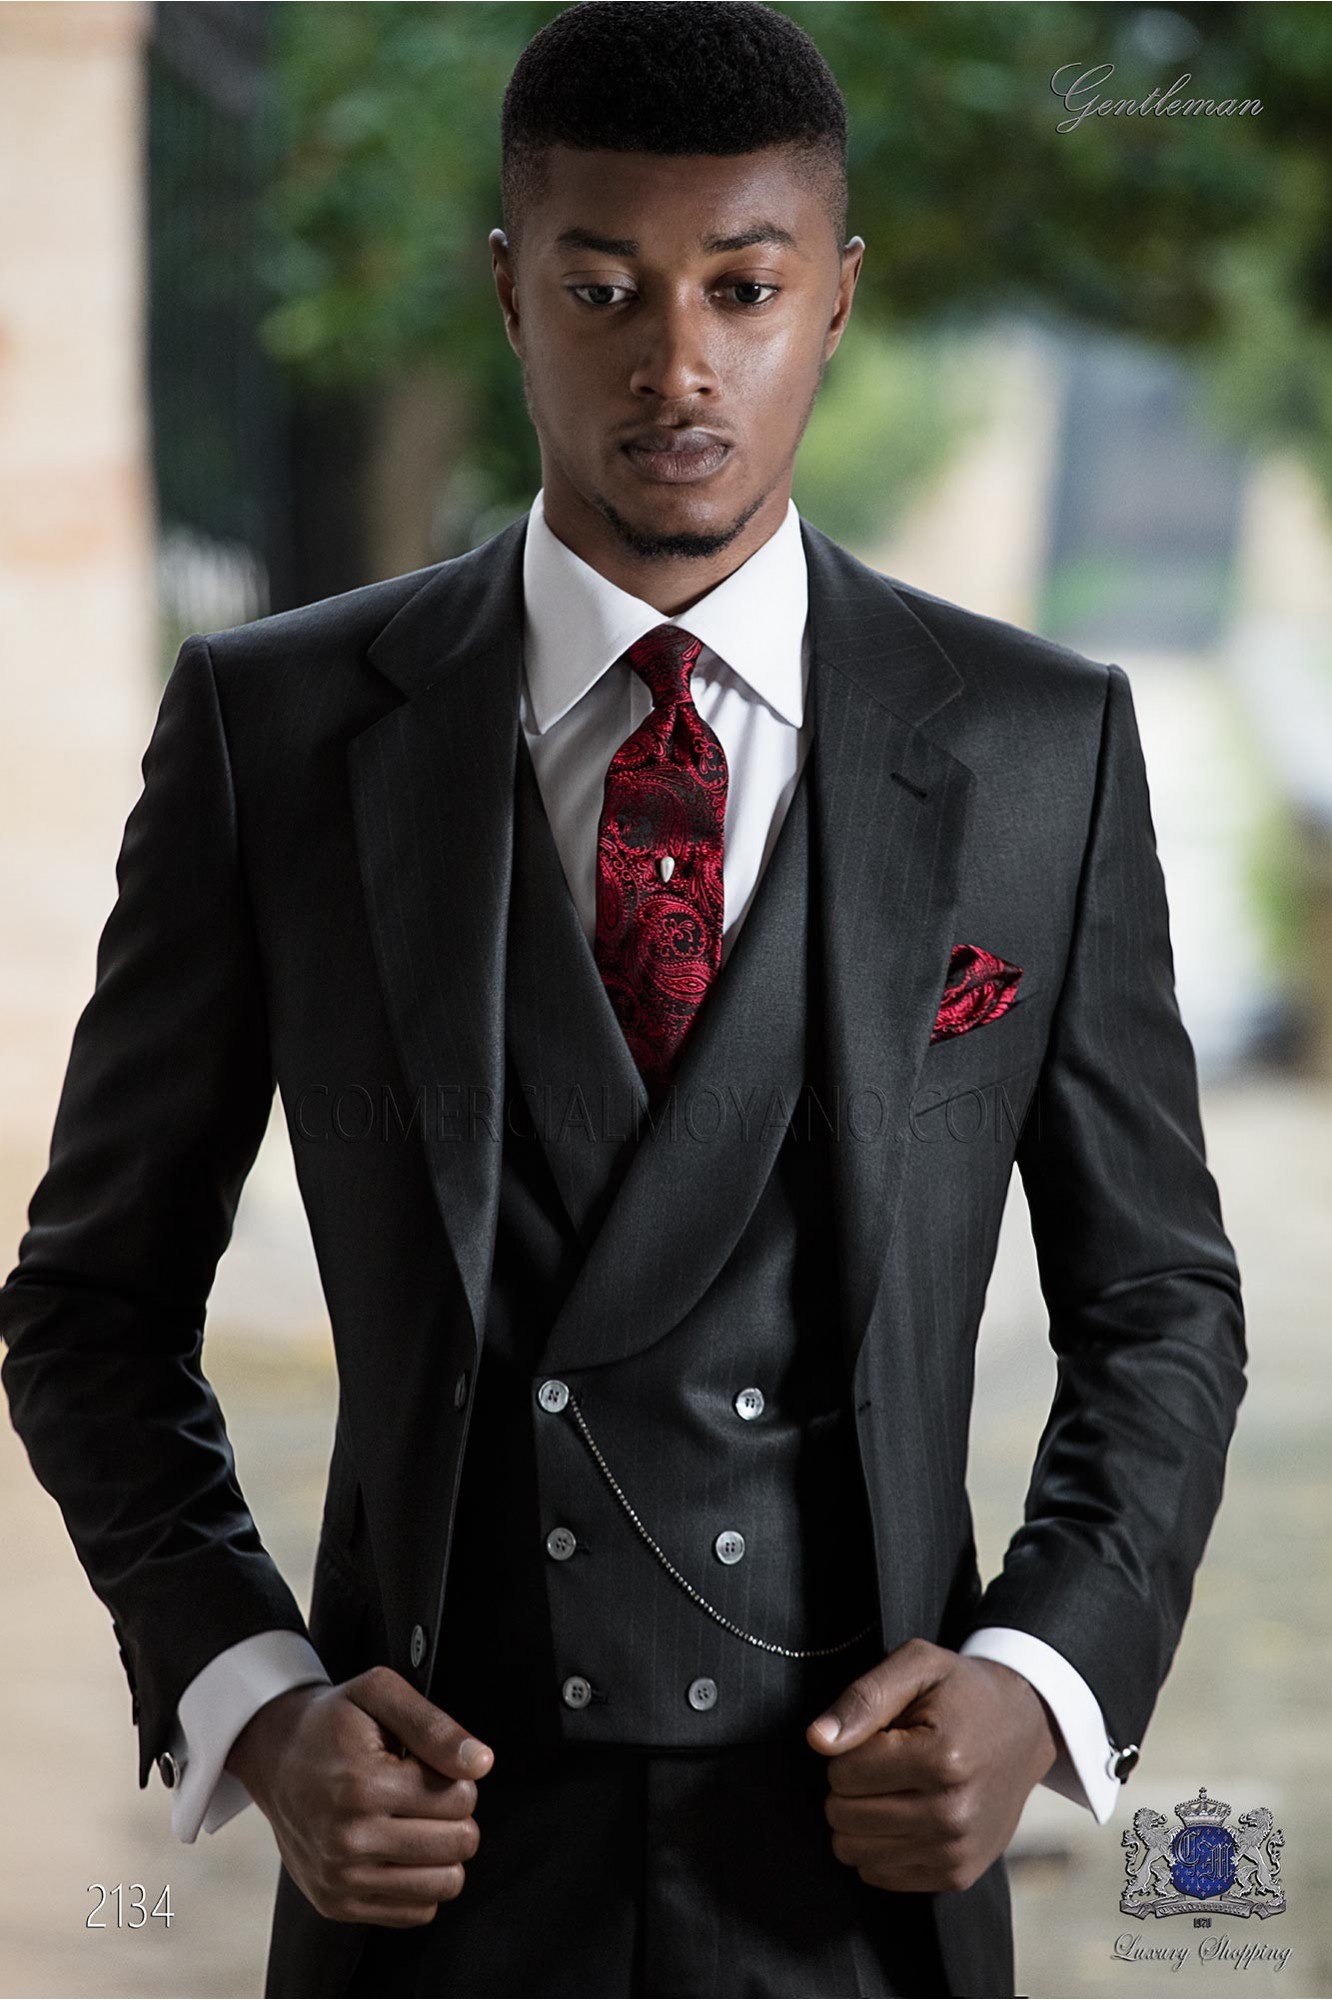 Traje negro con raya diplomática roja modelo: 2134 Mario Moyano colección Gentleman